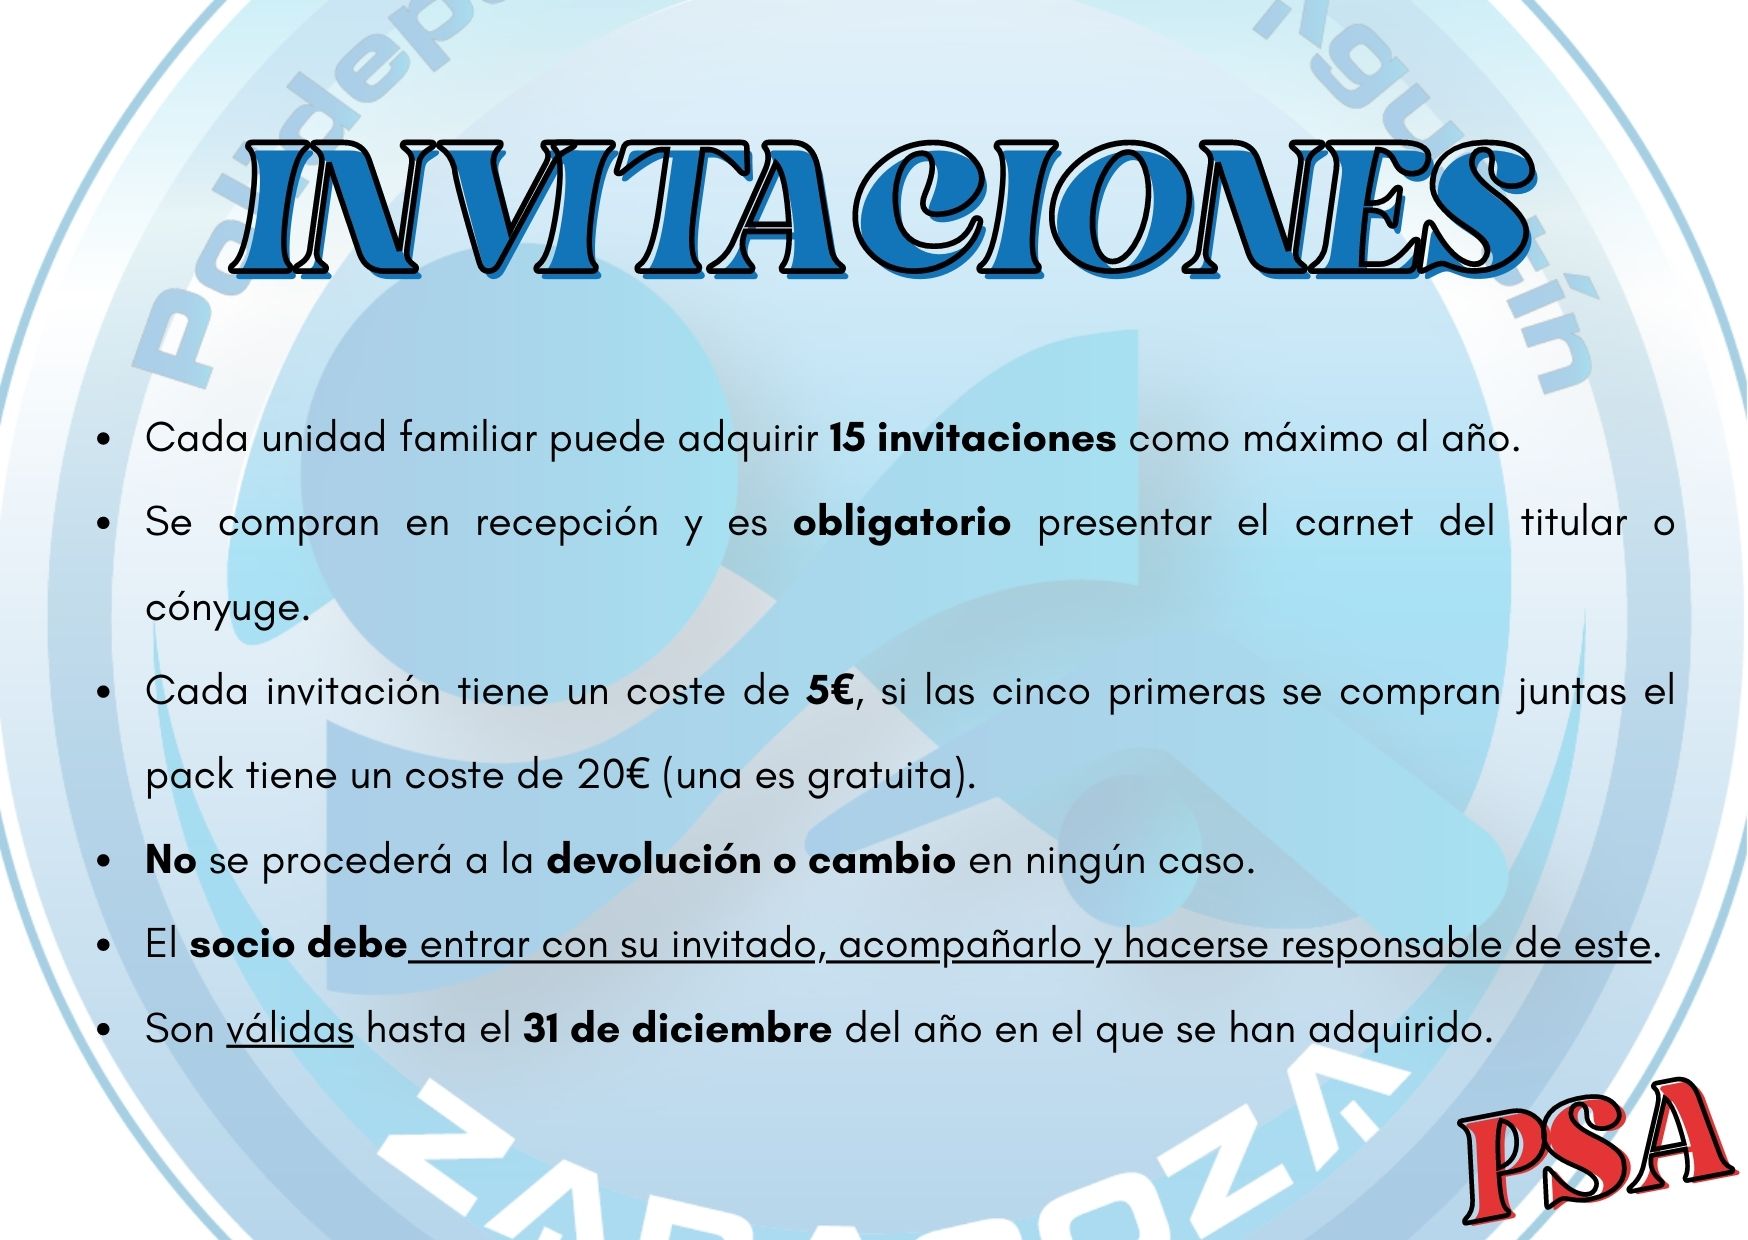 Actividad de INVITACIONES, para socios del Polideportivo San Agust�n Zaragoza